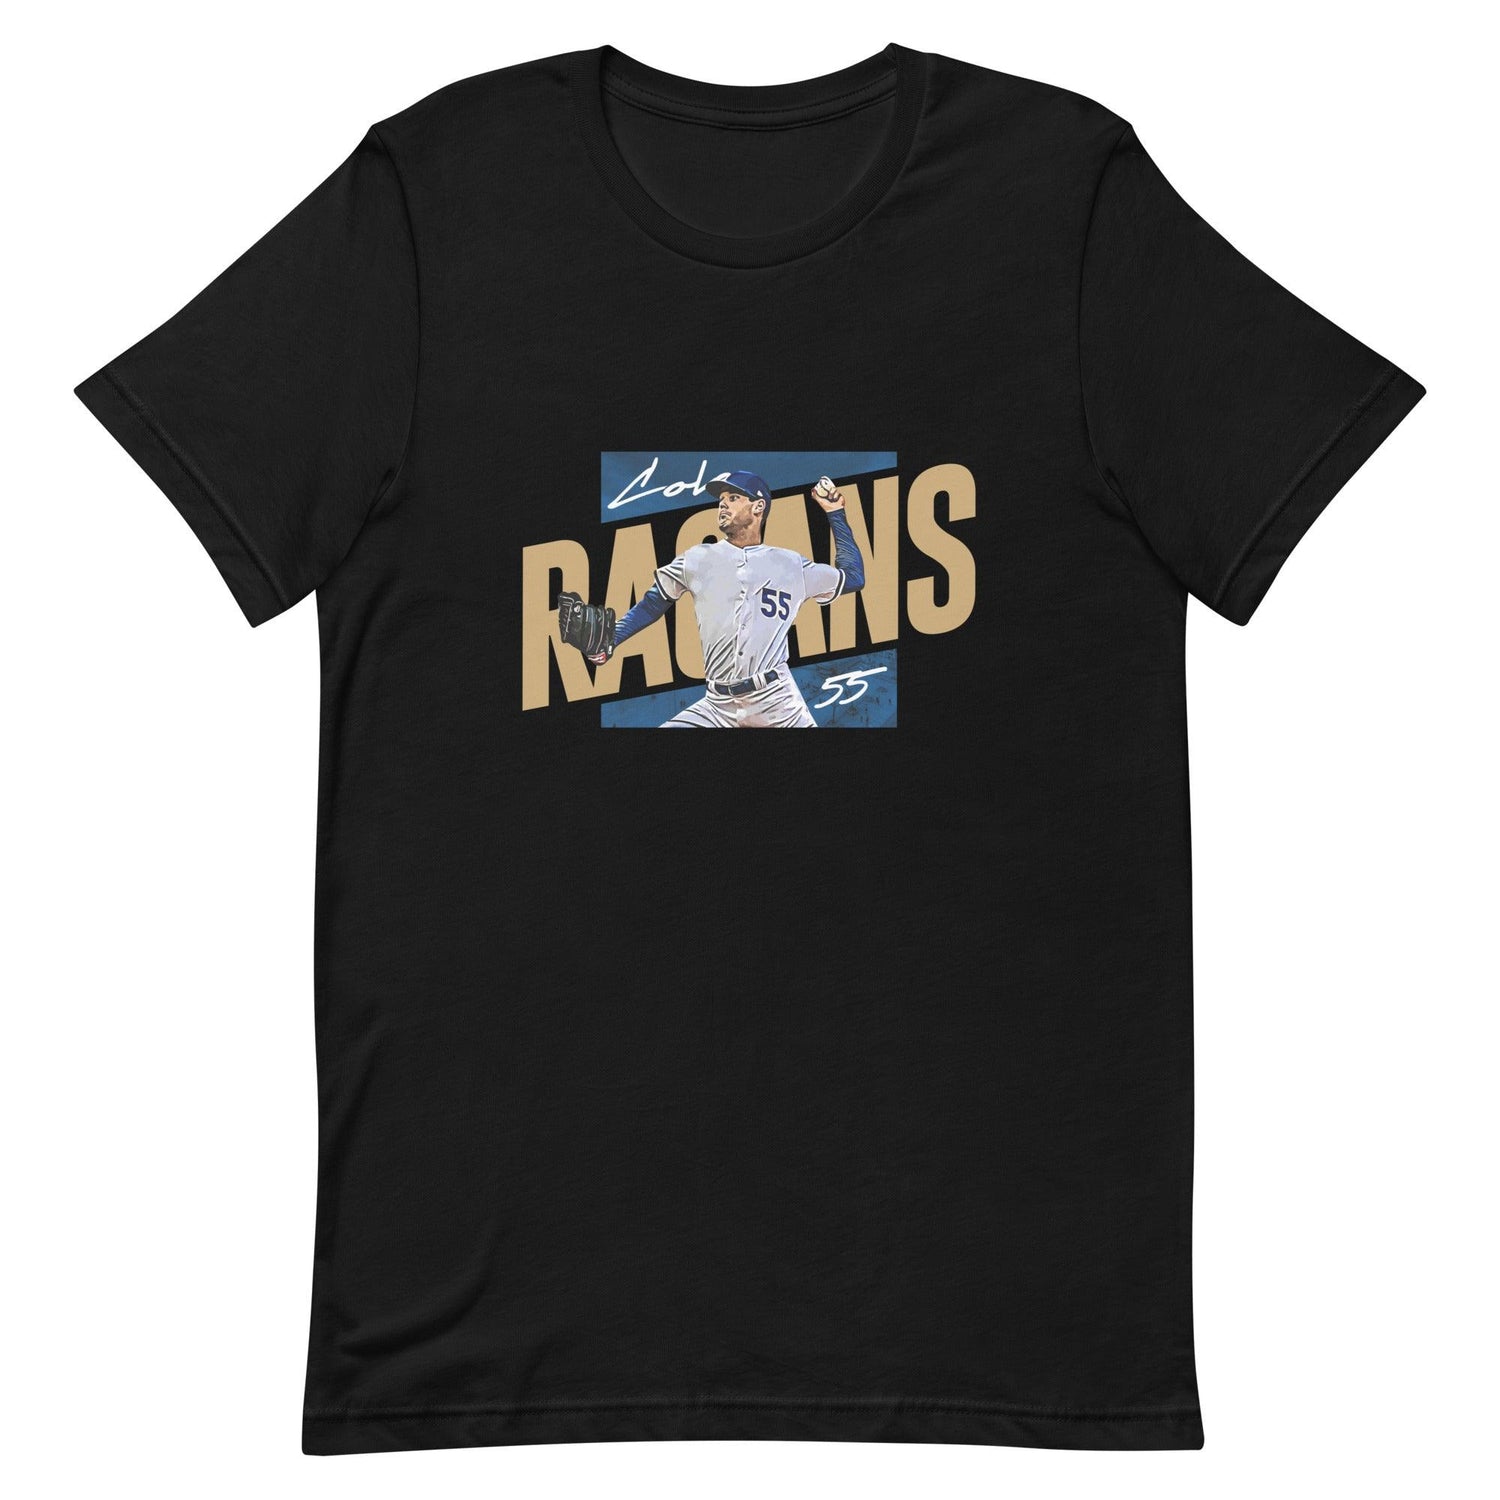 Cole Ragans "Gameday" t-shirt - Fan Arch